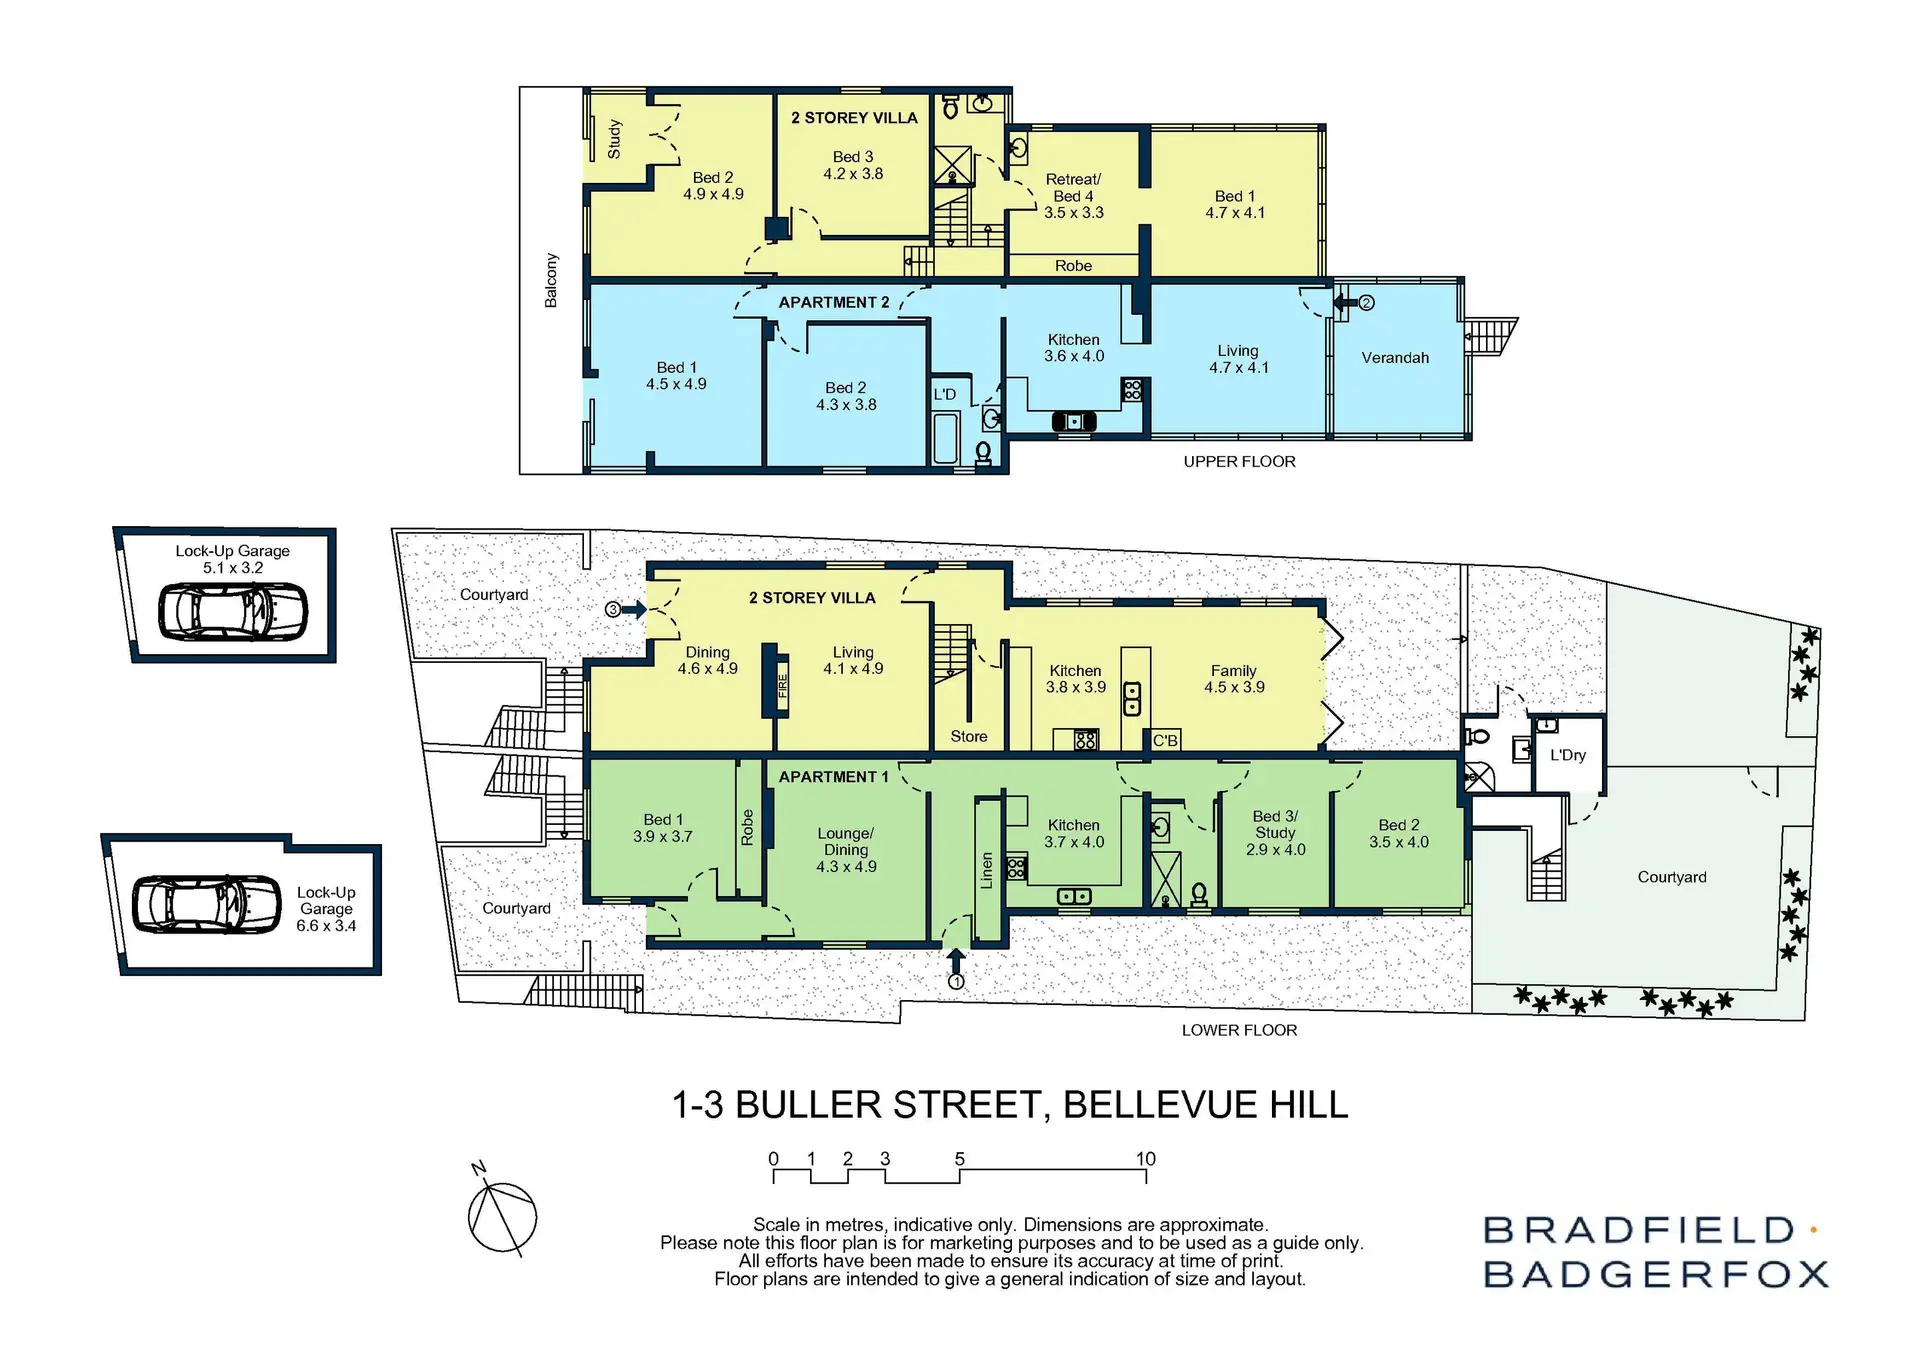 1-3 Buller Street, Bellevue Hill Sold by Bradfield Badgerfox - image 1